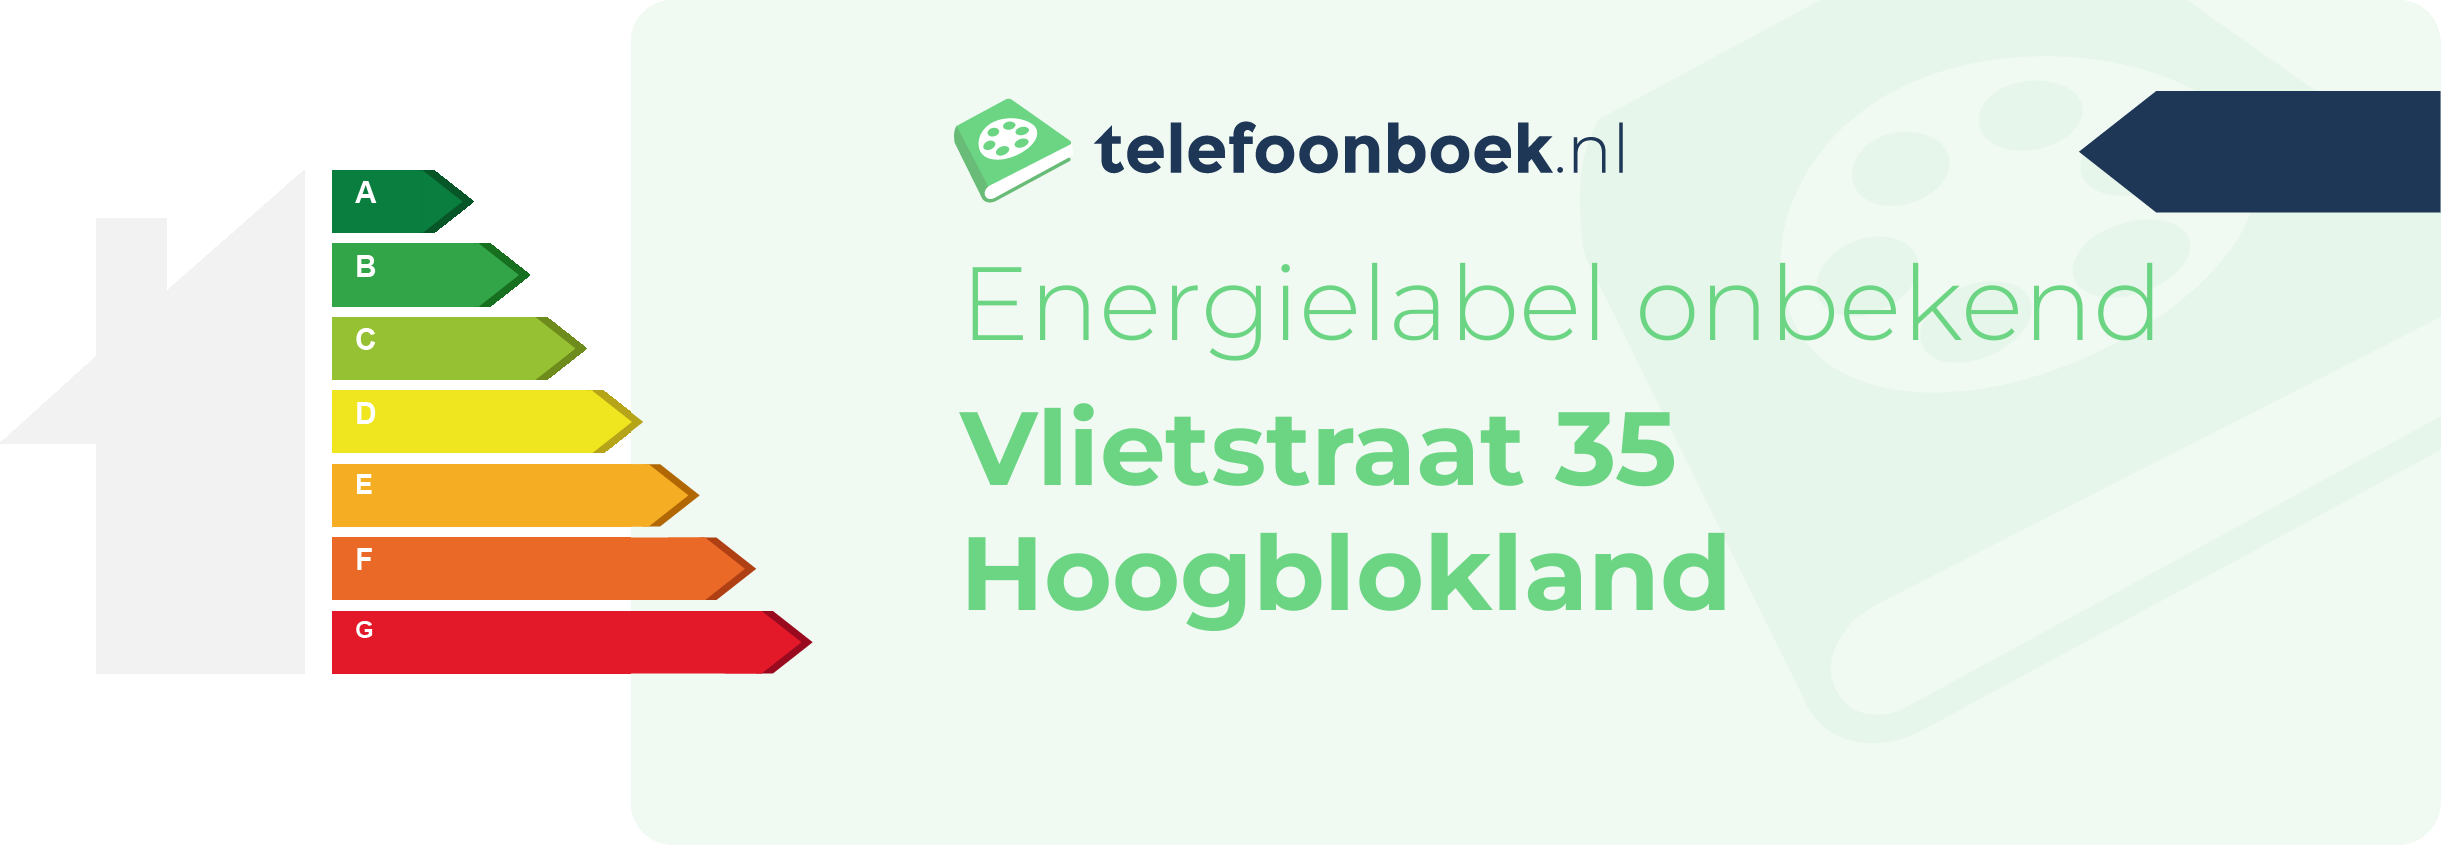 Energielabel Vlietstraat 35 Hoogblokland